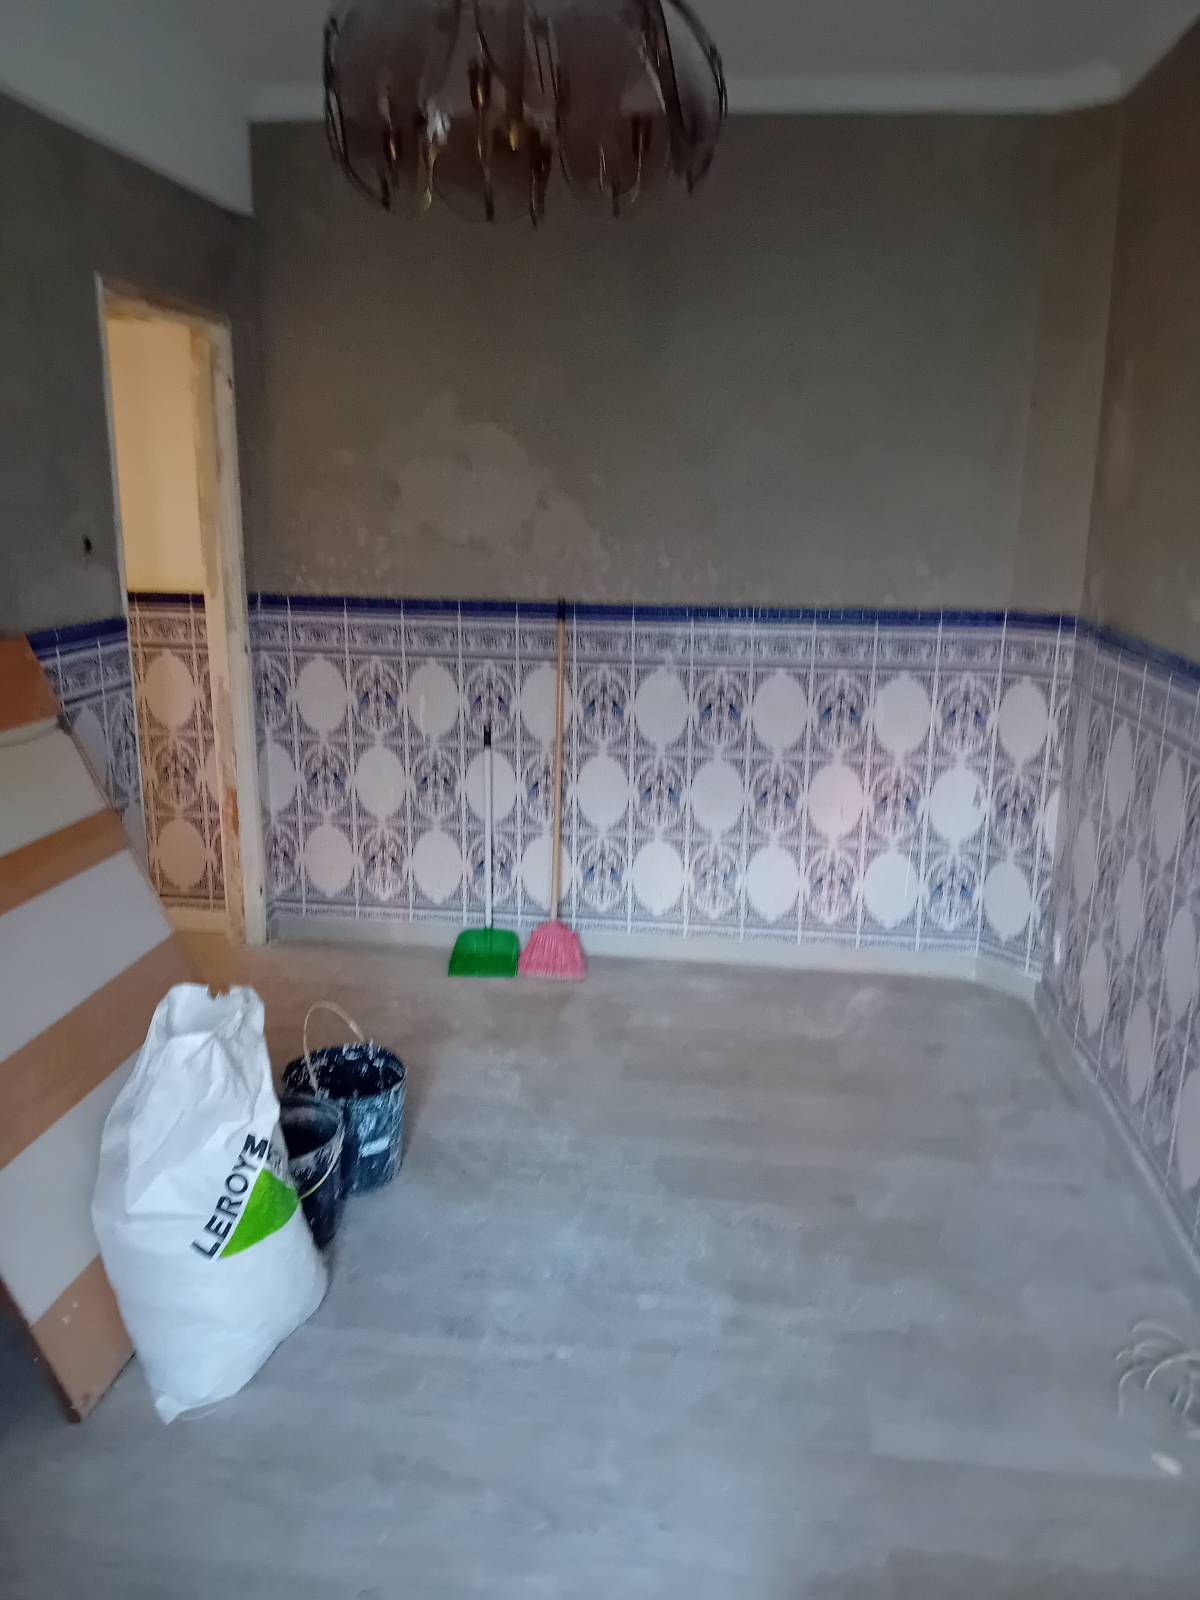 MOVIA AFONSO - Odivelas - Remodelação da Casa